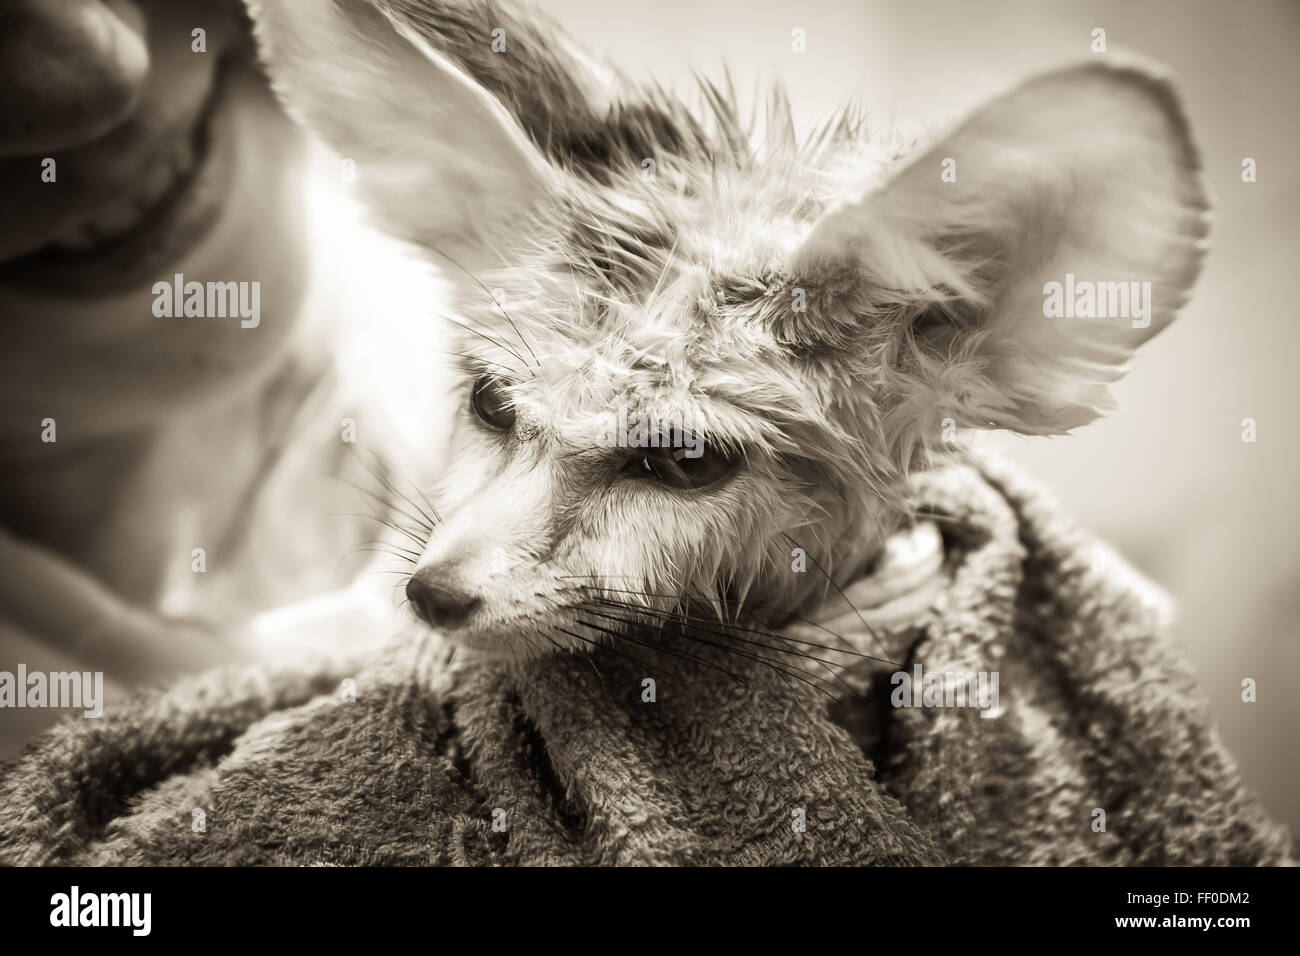 Funny disheveled cucciolo fennec fox con il suo proprietario sorridente sullo sfondo Foto Stock